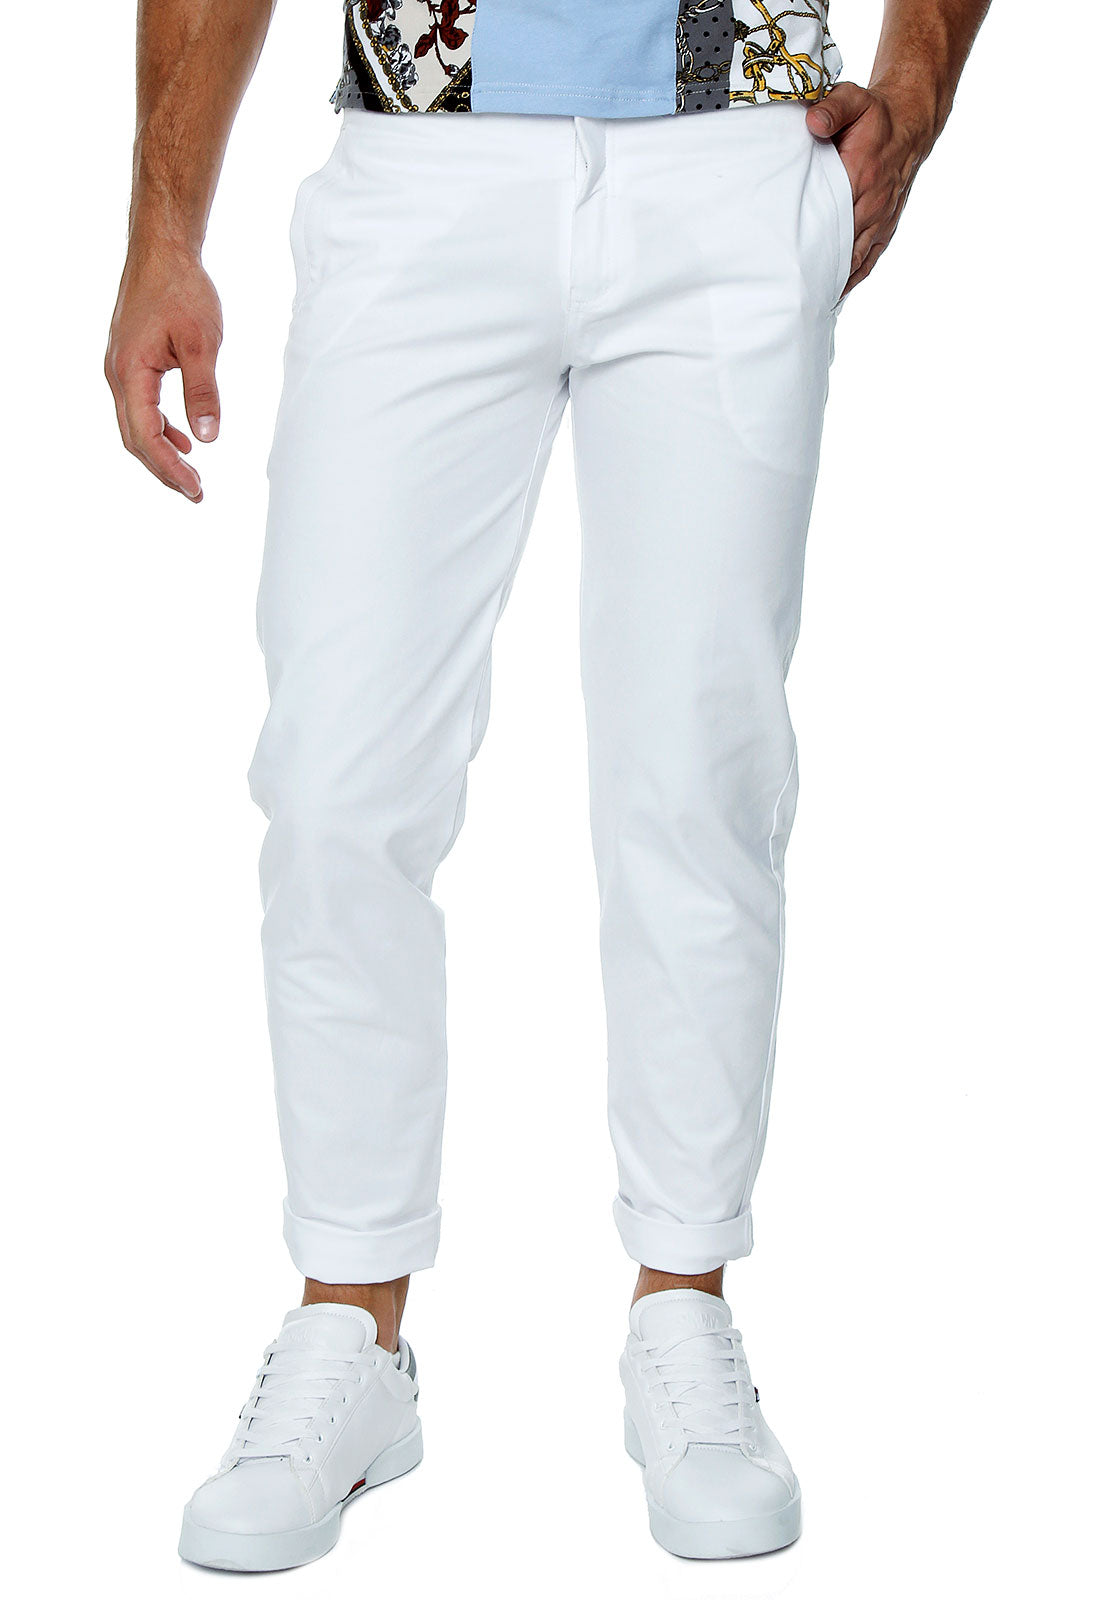 Pantalón Blanco para hombre, pantalón básico para el guardaropas mascu –  OSOP Mansion Conscious Luxury Humanswear Lo mejor de la Moda masculina y  sin género en Colombia, ven a elevar tu propio